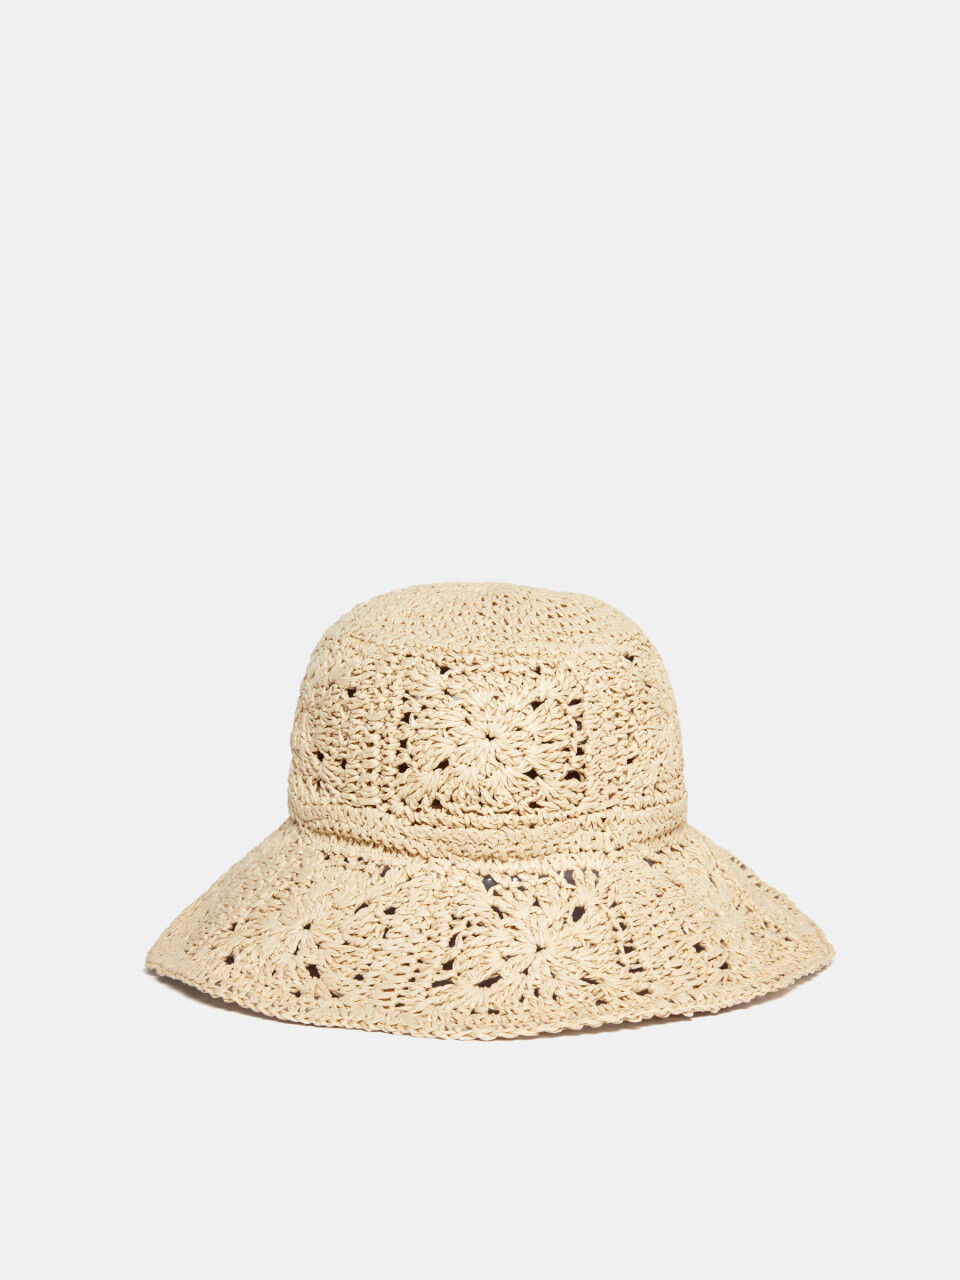 Fisherman's hat in crochet